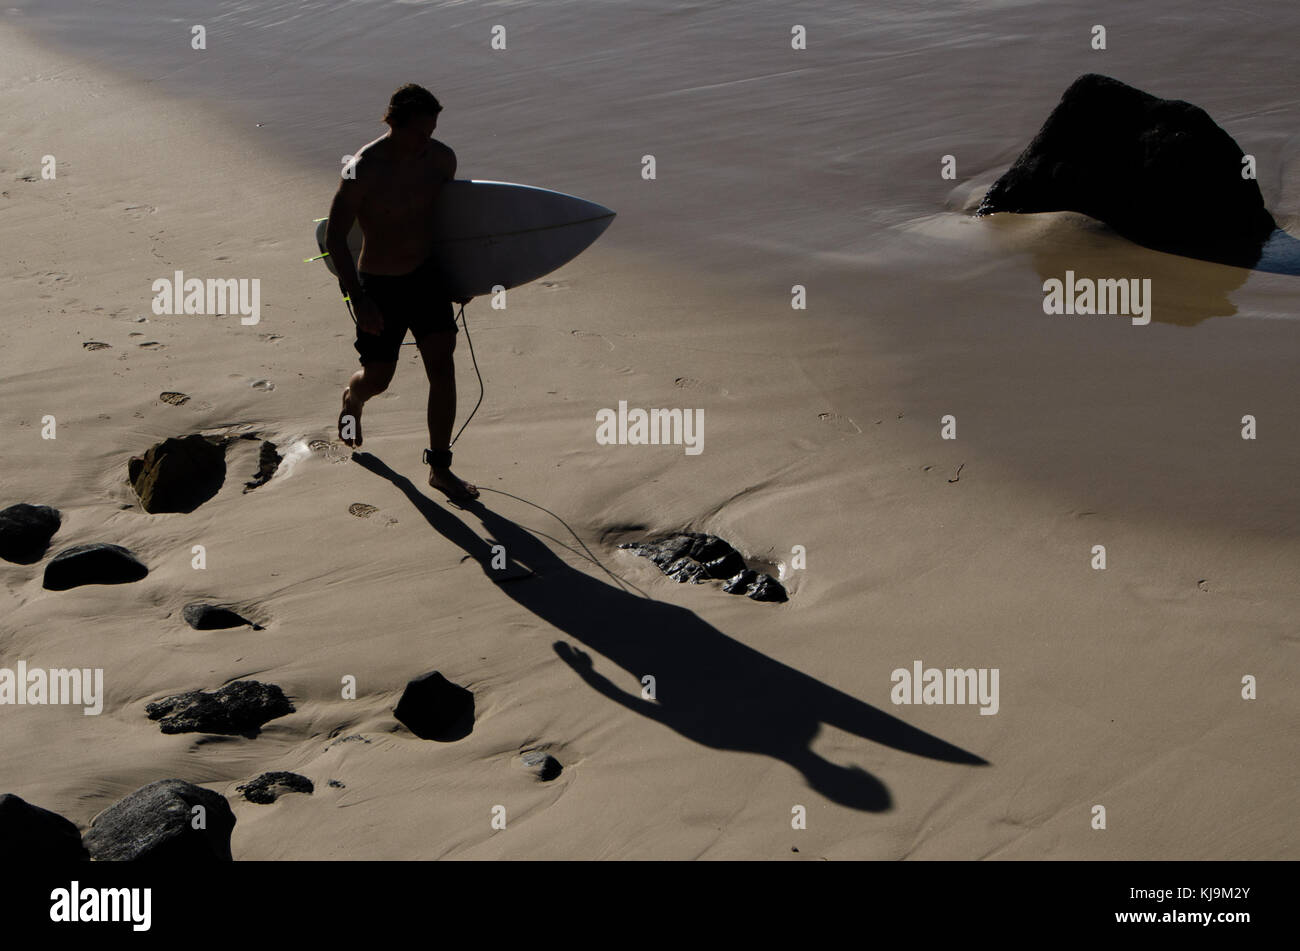 La figura del macho solitario caminando por la playa con tabla de surf. Silueta de surfista masculino que generan largas sombras sobre la arena mientras camina en la playa al atardecer. Foto de stock